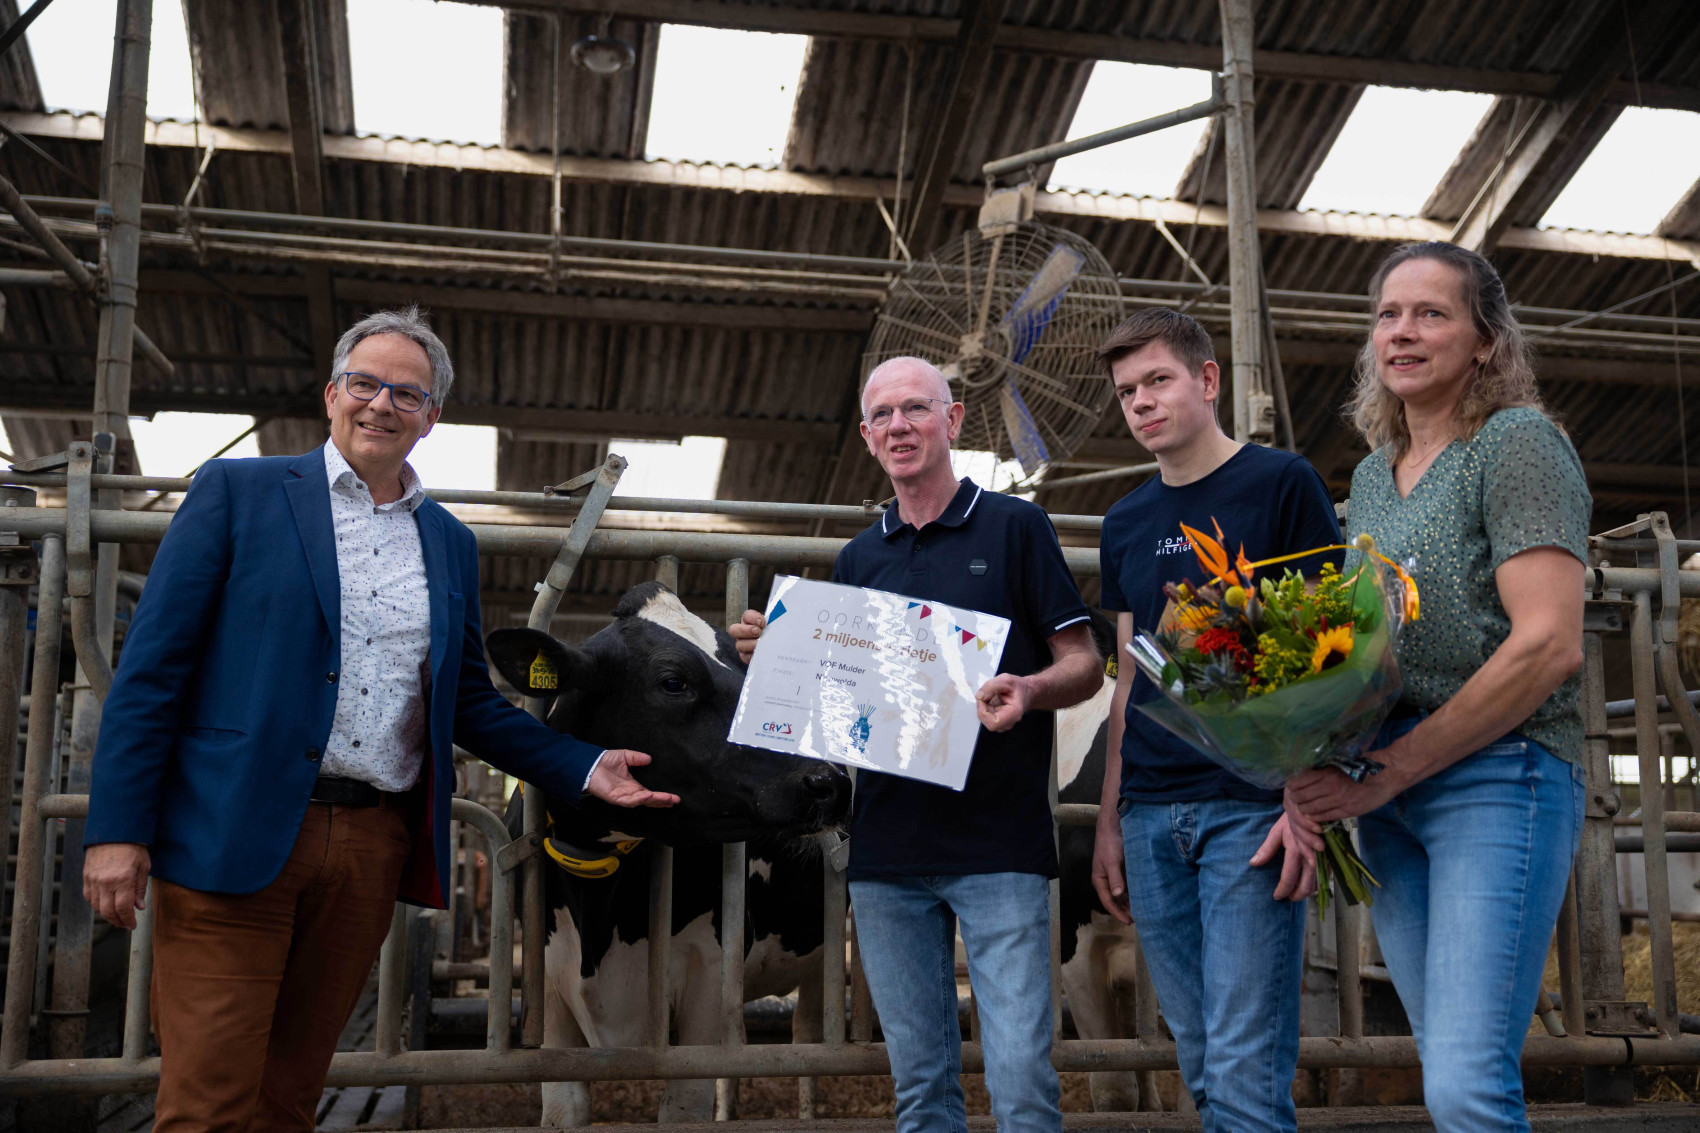 Lammert Veenhuizen, director Países Bajos - Flandes de CRV, estuvo presente en Nieuwolda para felicitar y agradecer a André, Thomas y Rikie Mulder su confianza en CRV